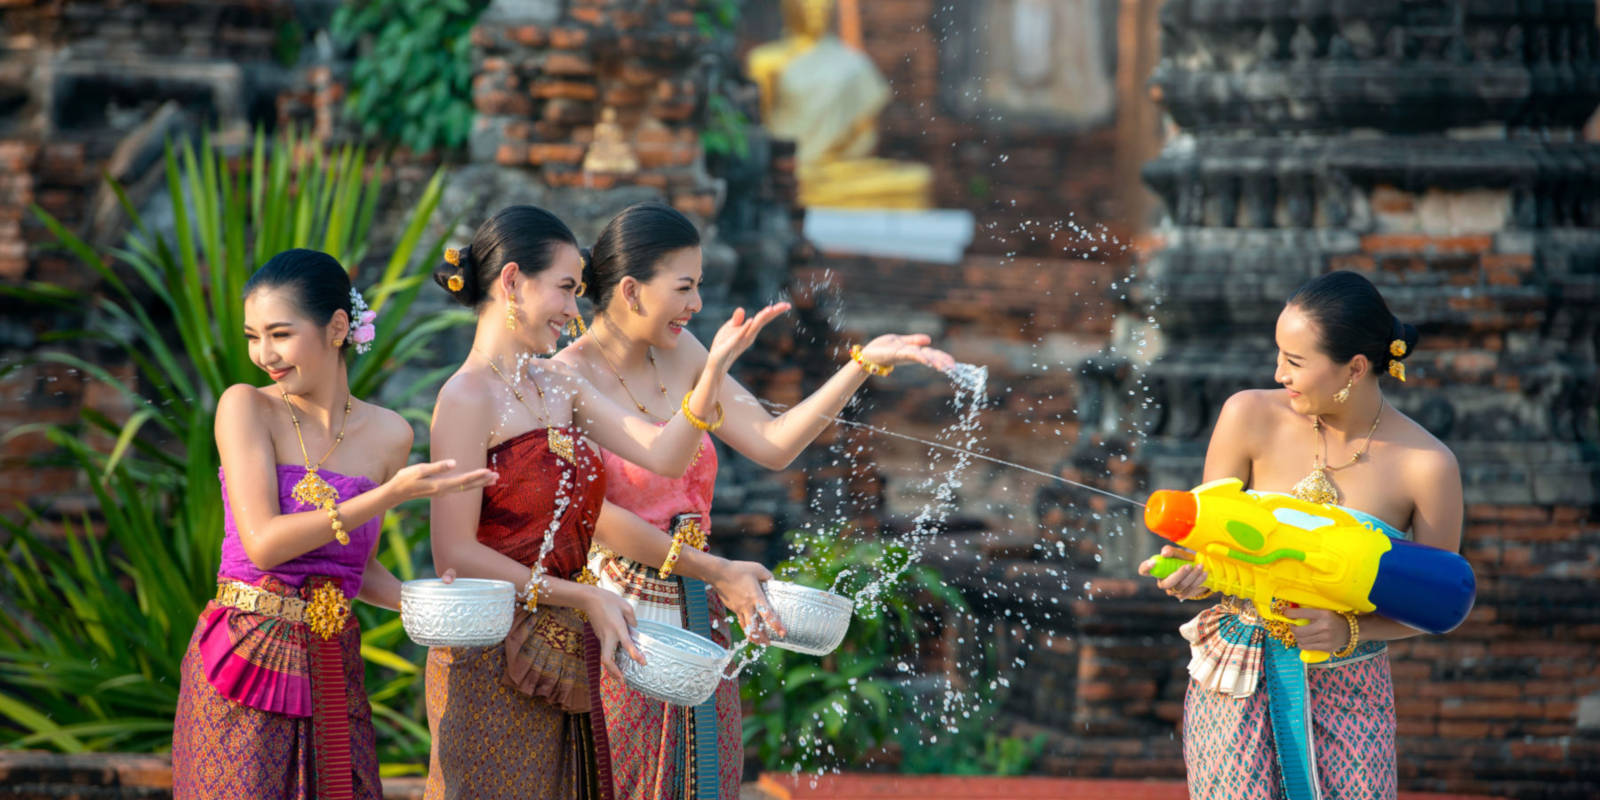 Thái Lan: Songkran 2023 sẽ là lễ hội té nước lớn nhất từ trước đến nay -  Nhịp sống kinh tế Việt Nam & Thế giới